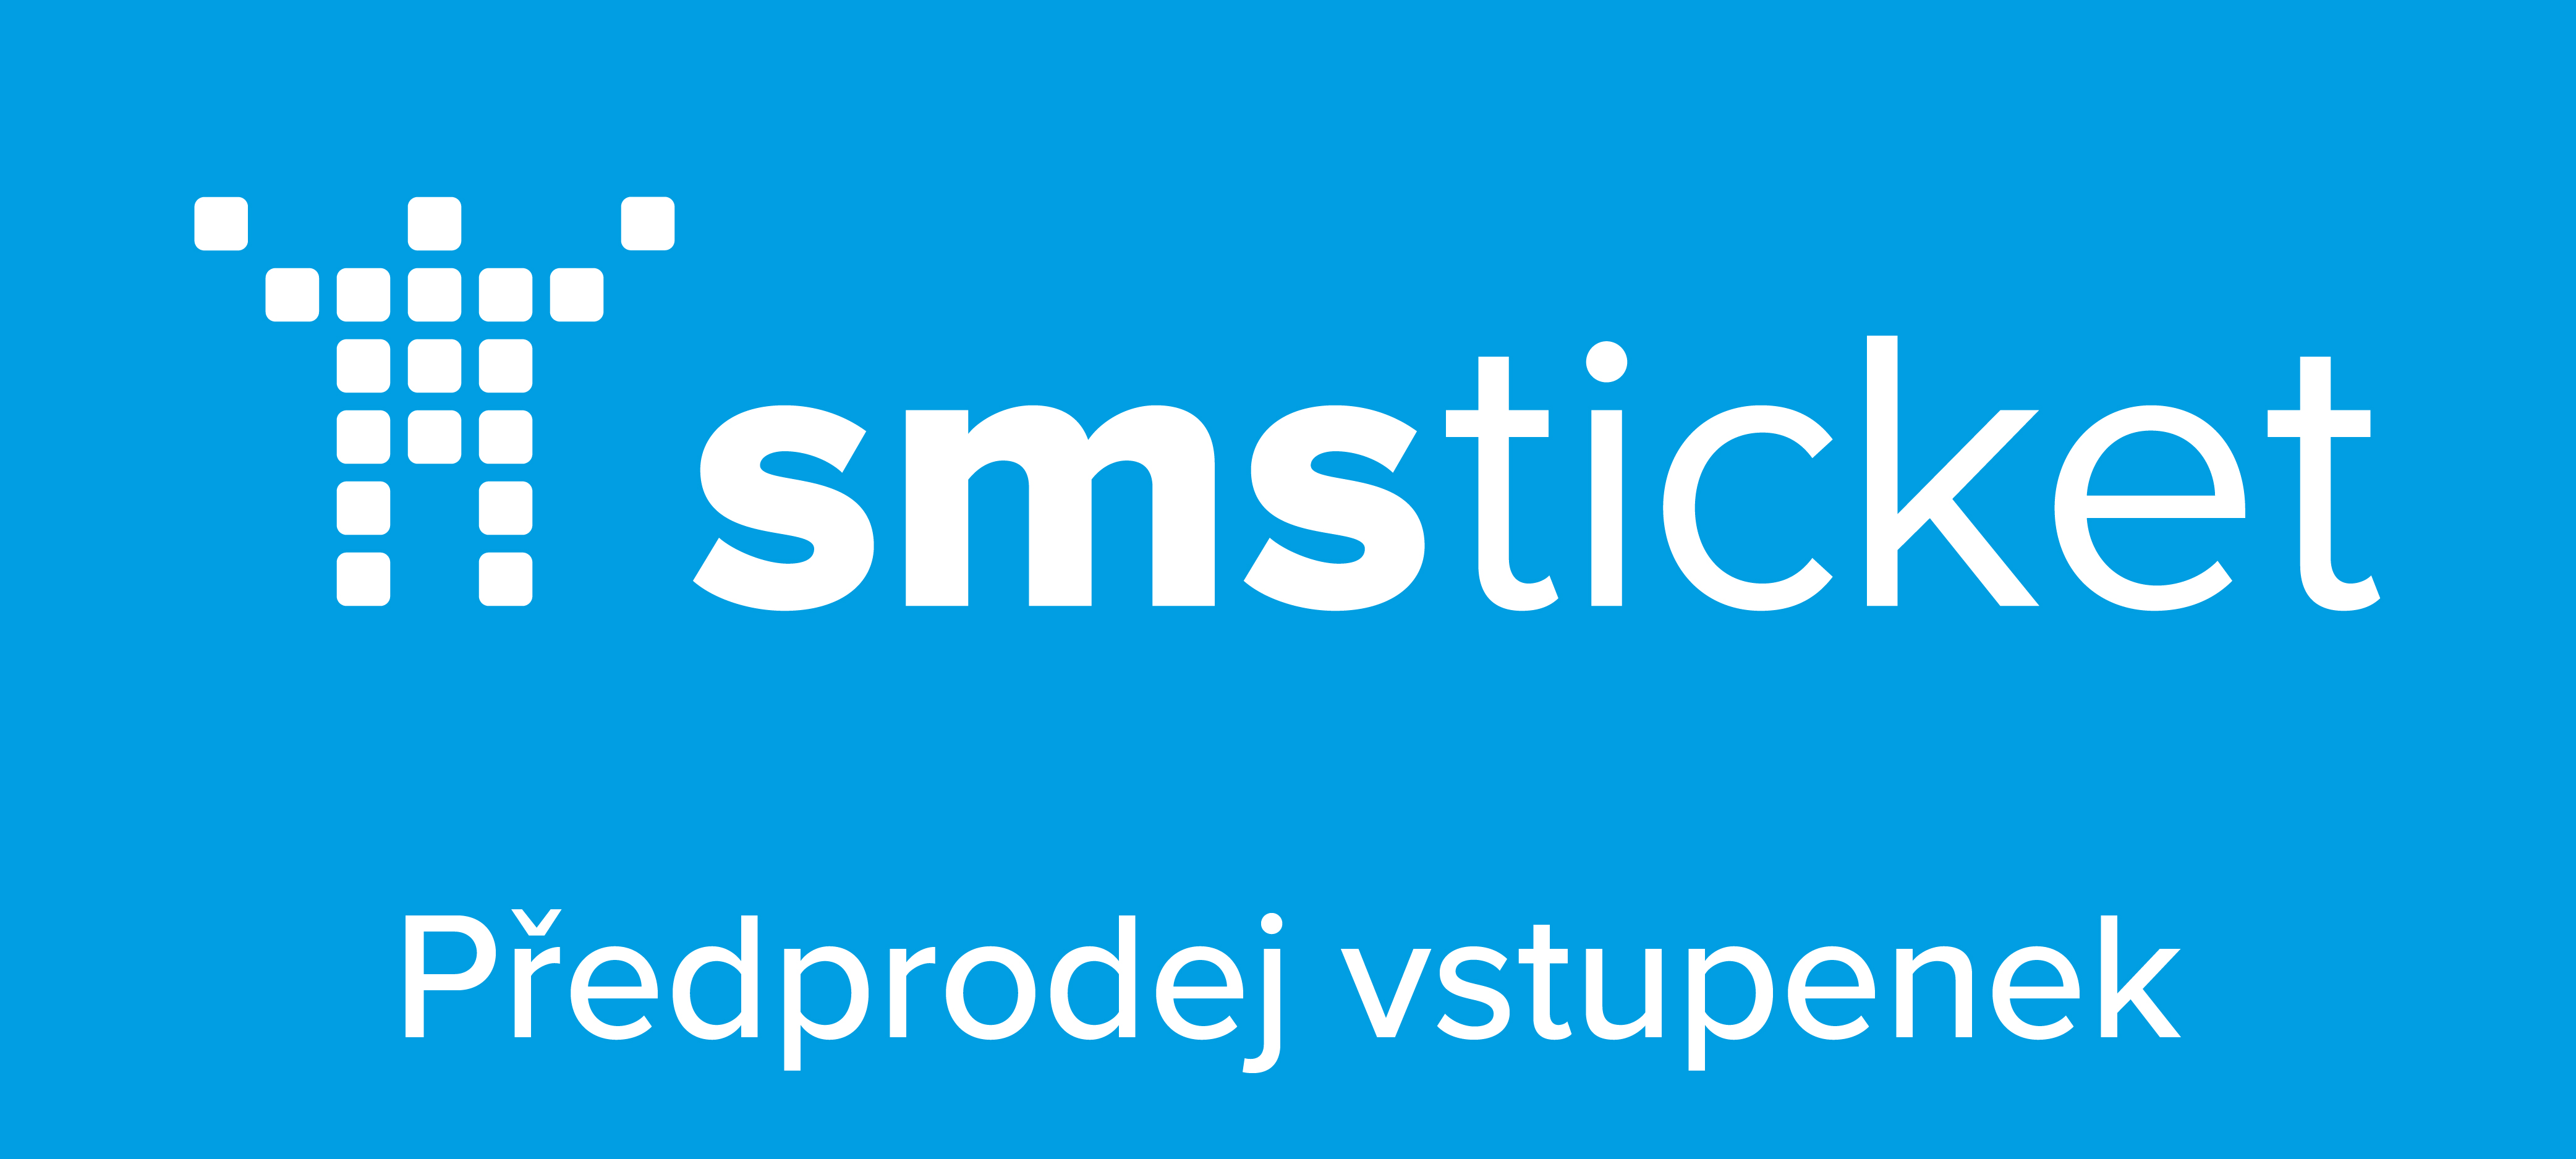 Smsticket-predprodej-vstupenek_bile-logo-modre-pozadi